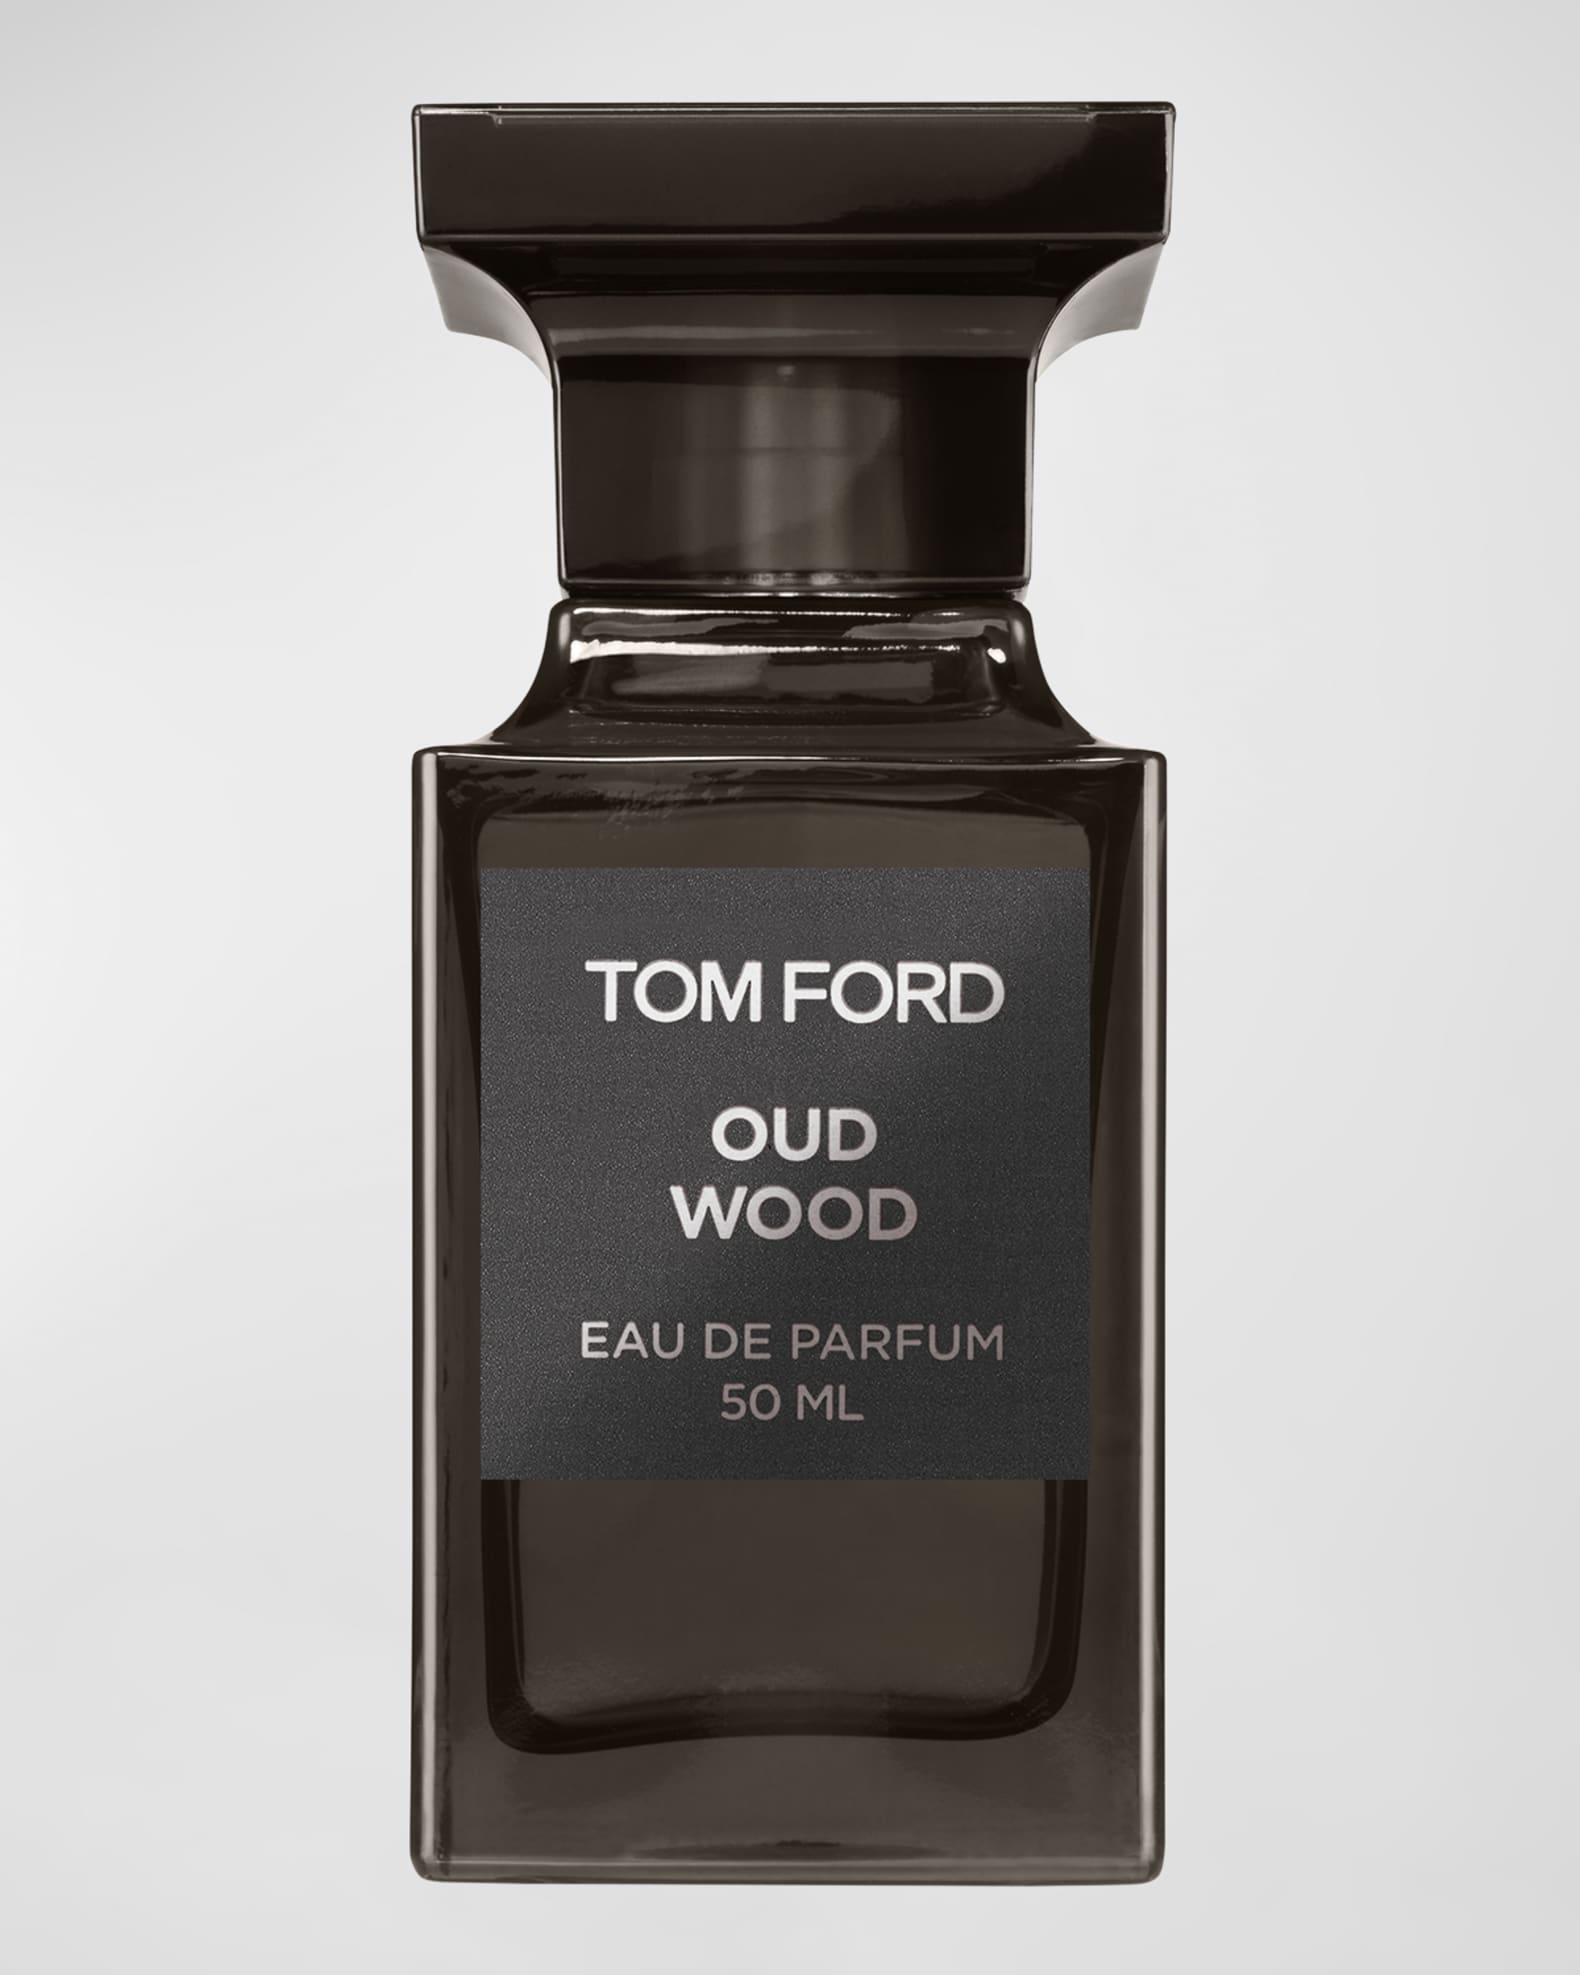 Oud Wood Eau de Parfum Fragrance 0